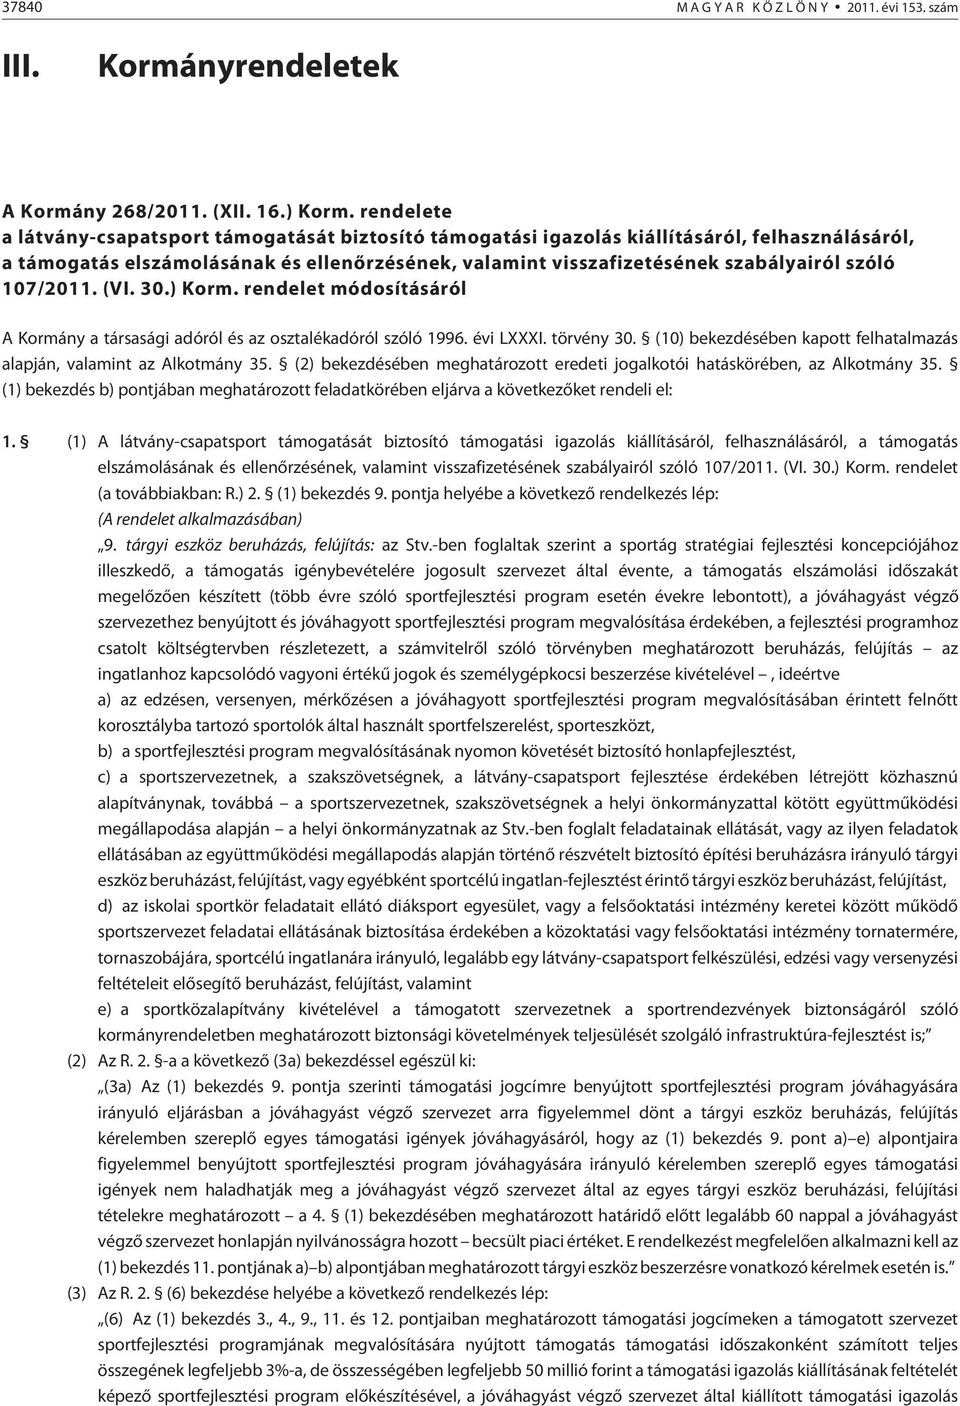 107/2011. (VI. 30.) Korm. rendelet módosításáról A Kormány a társasági adóról és az osztalékadóról szóló 1996. évi LXXXI. törvény 30.